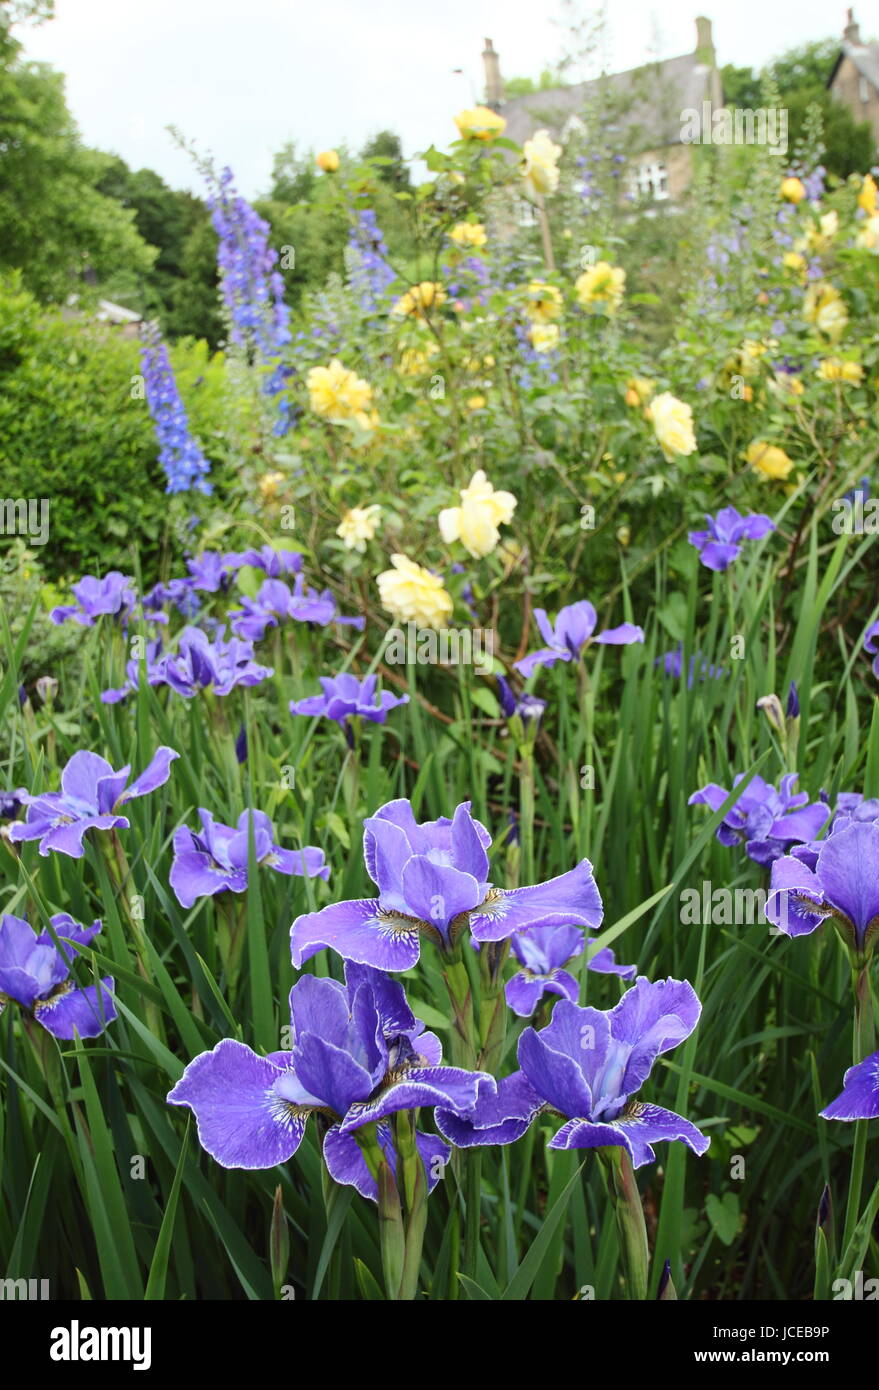 Iris sibirica 'Silver Edge', dans le bleu de l'Iris de Sibérie en pleine floraison contre rosa 'Golden Celebration' à la frontière d'un jardin anglais Juin, UK Banque D'Images